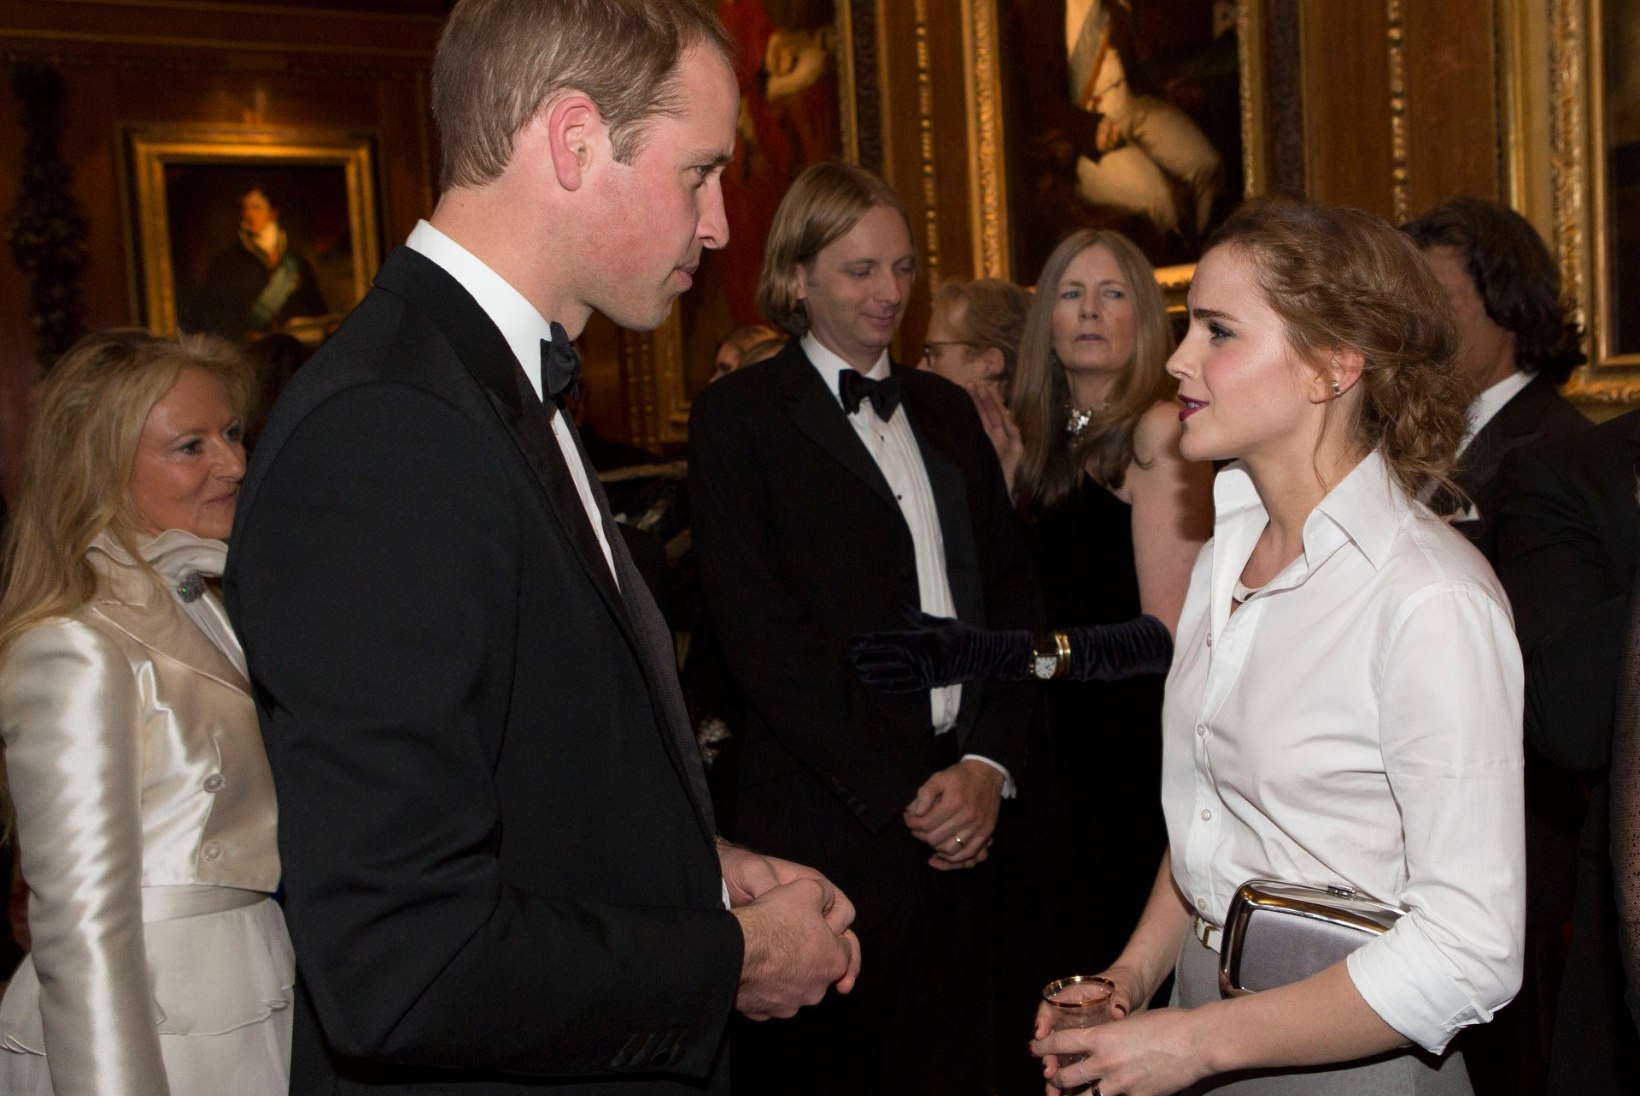 GALERII: Prints William võõrustas Windsori lossis kuulsaid külalisi